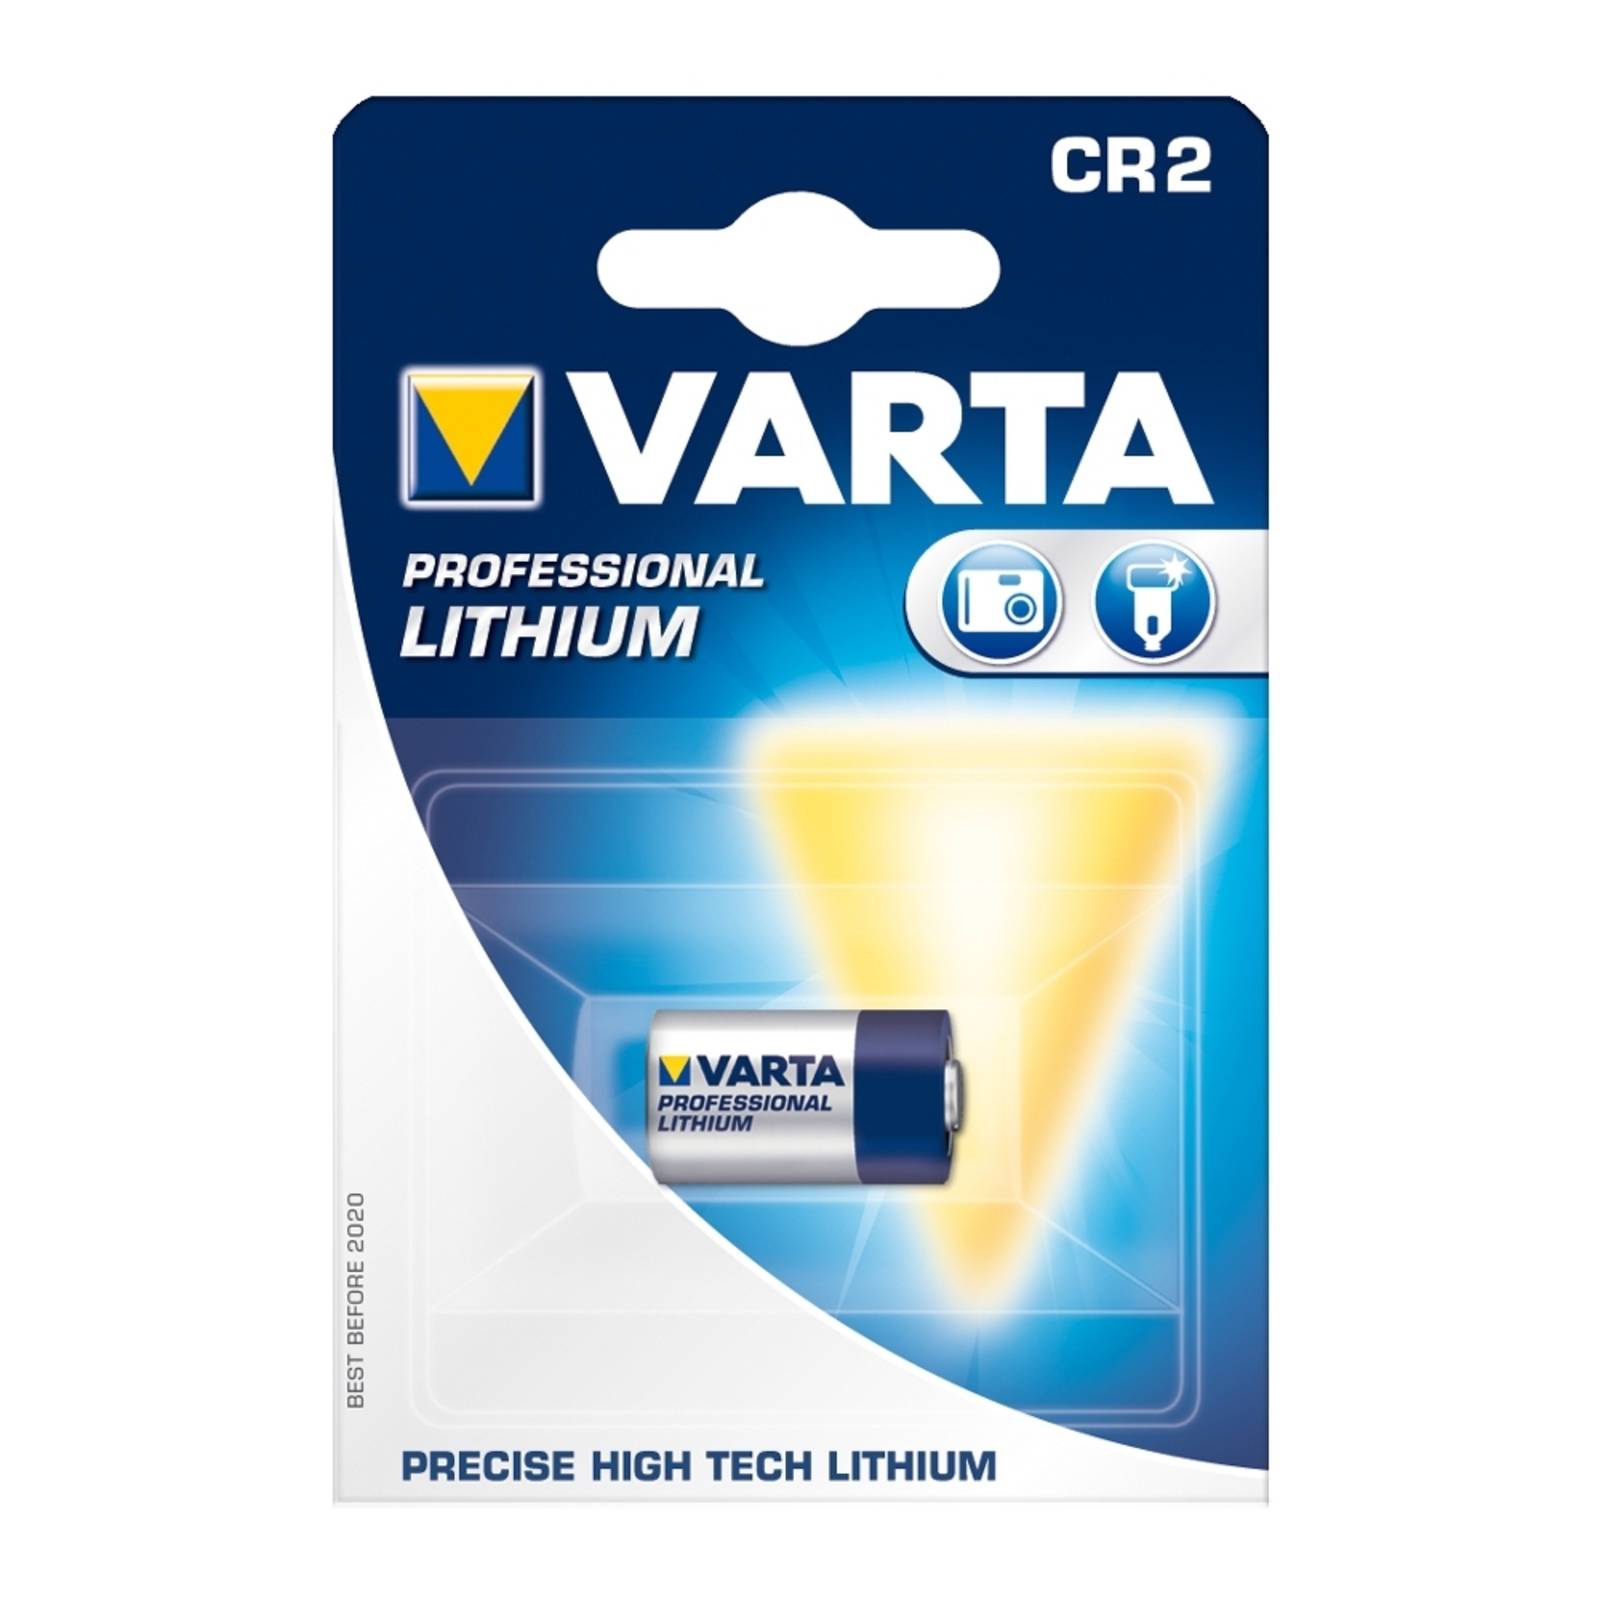 Lithium Batterie CR2 (6206) 3V von VARTA von Varta